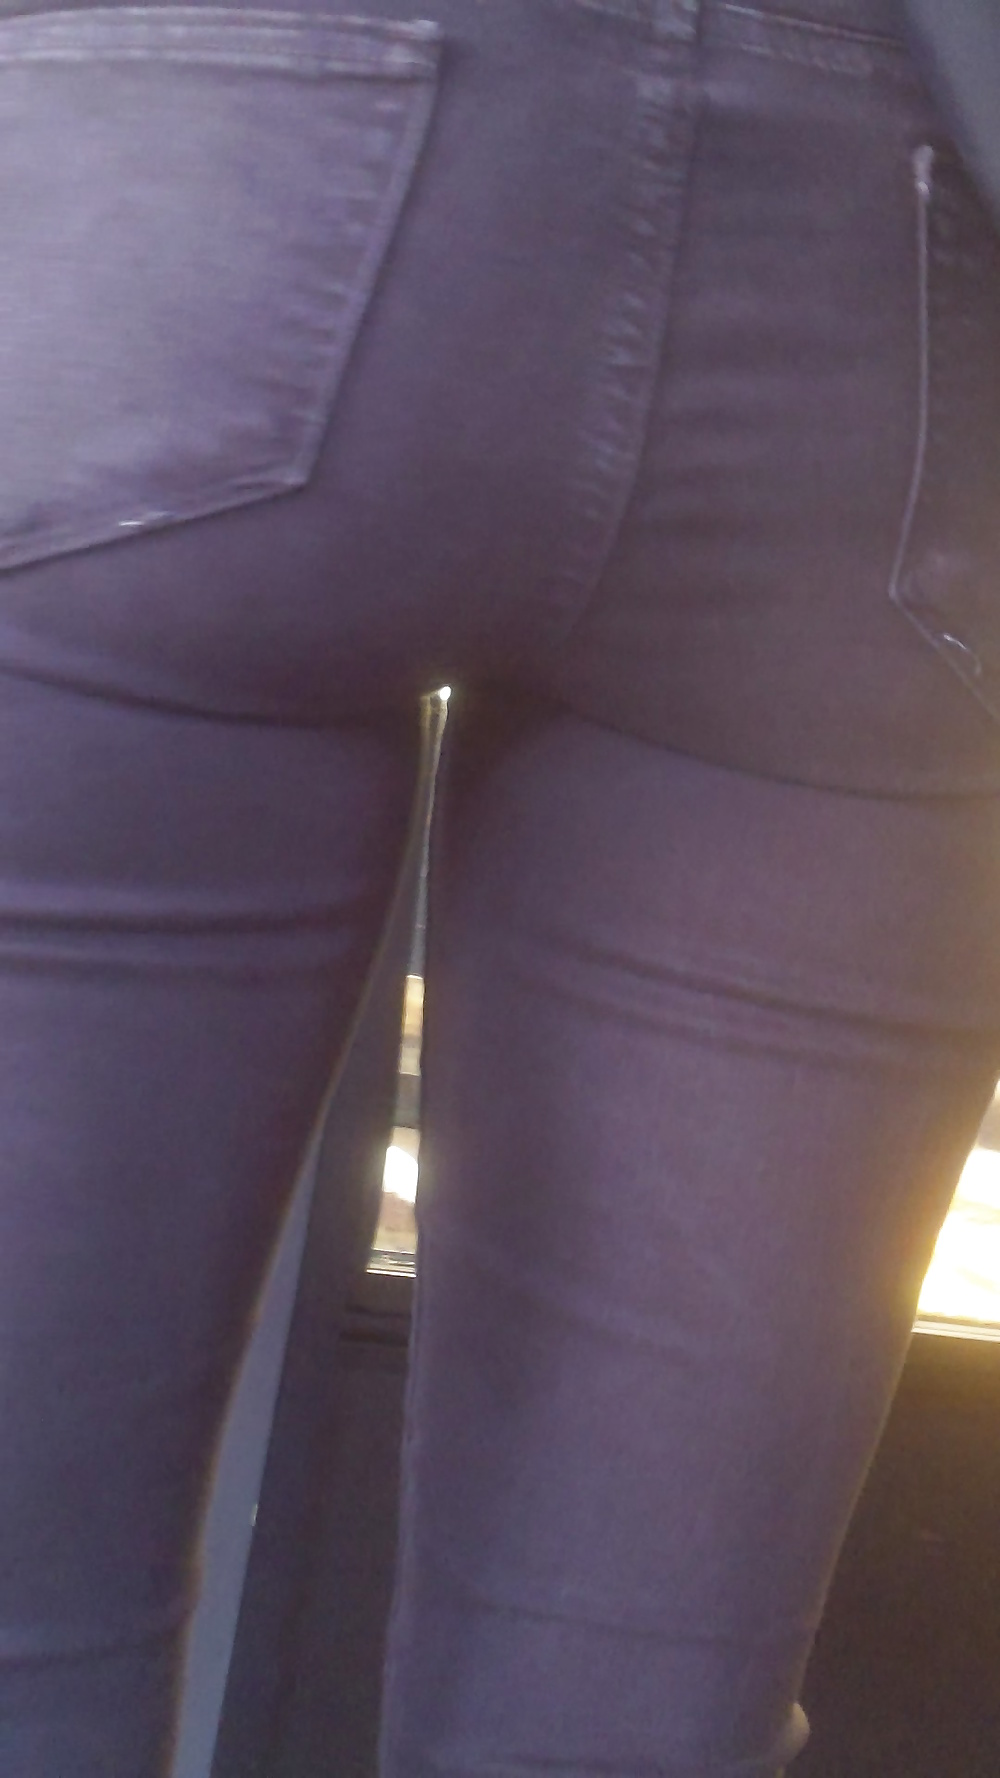 Popular teen girls ass & butt in jeans part 3 #25401305